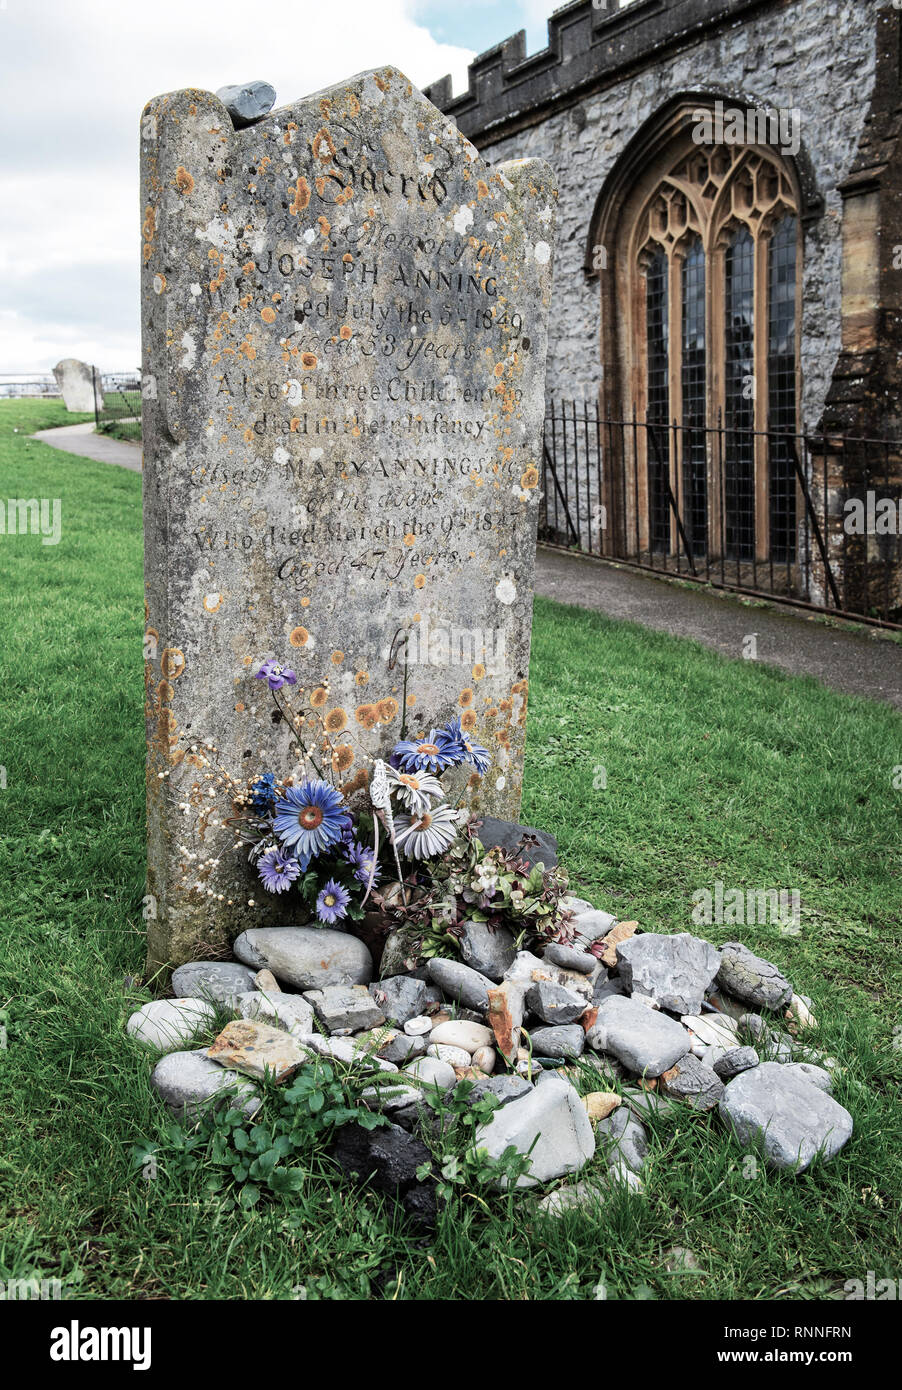 La pierre tombale d'origine Mary Anning avant qu'il a été remplacé en 2019. Les visiteurs aiment placer des fossiles sur la tombe au lieu de fleurs en sa mémoire. Banque D'Images